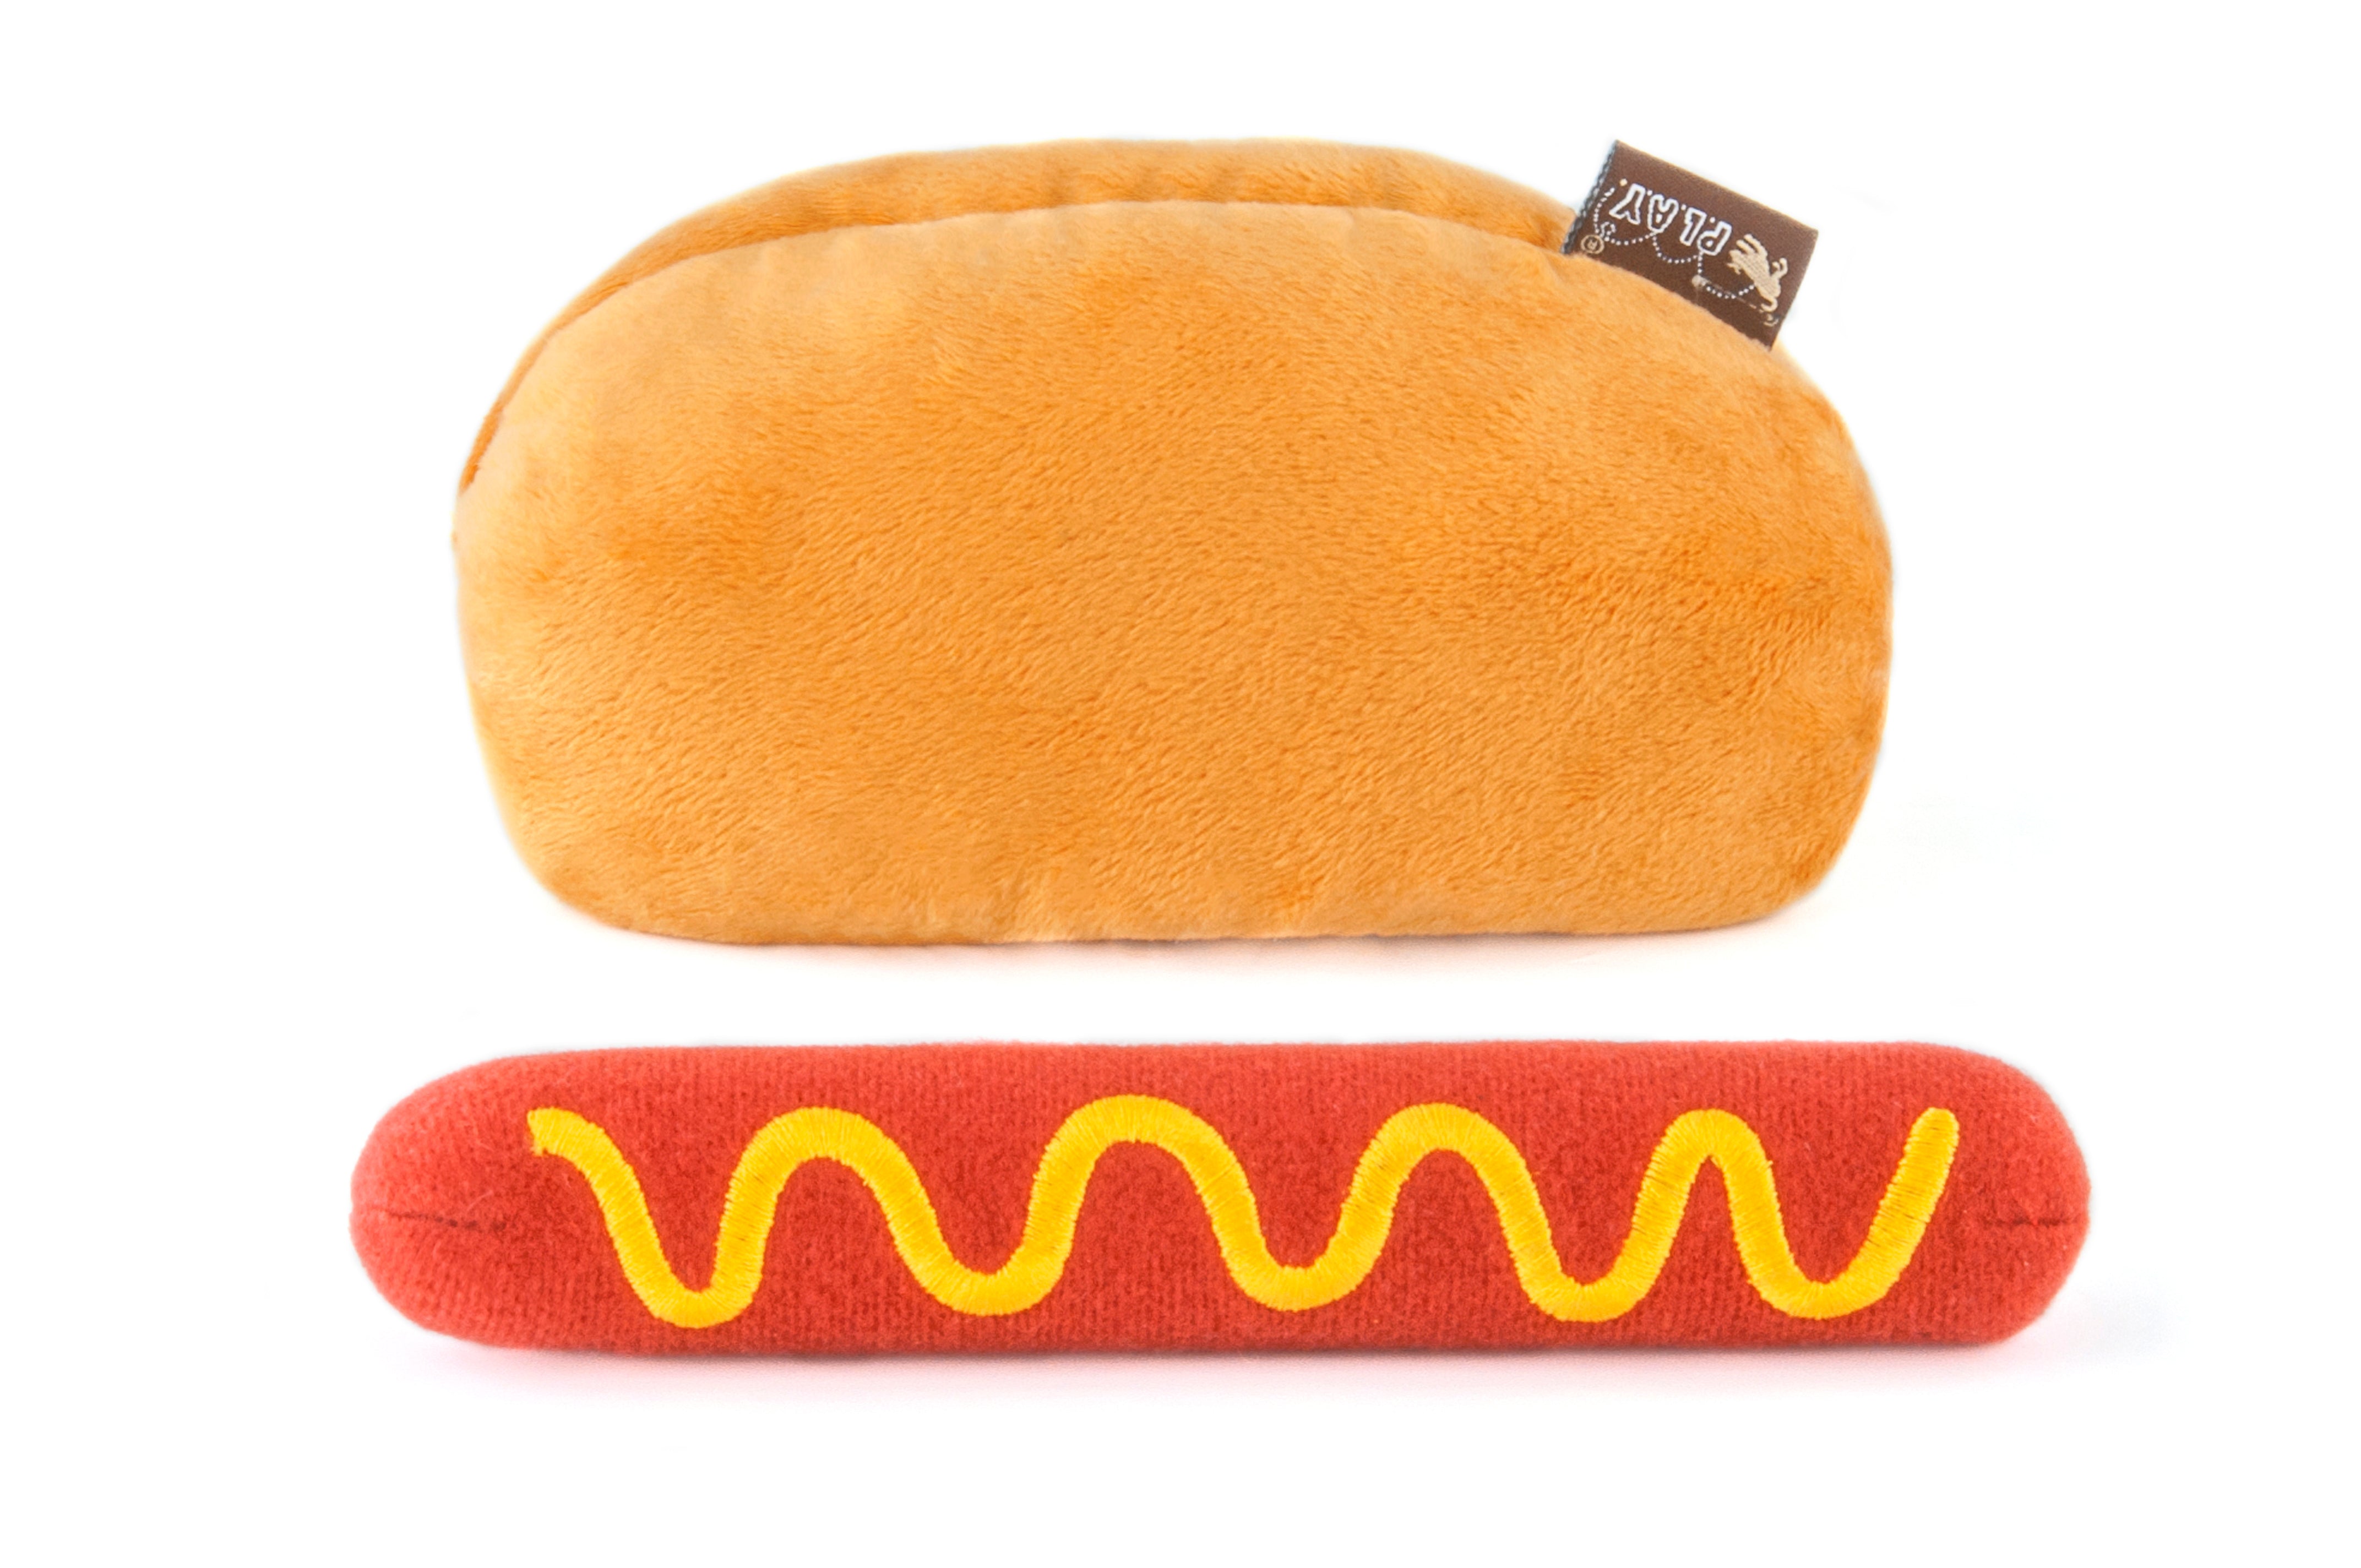 hot dog toy